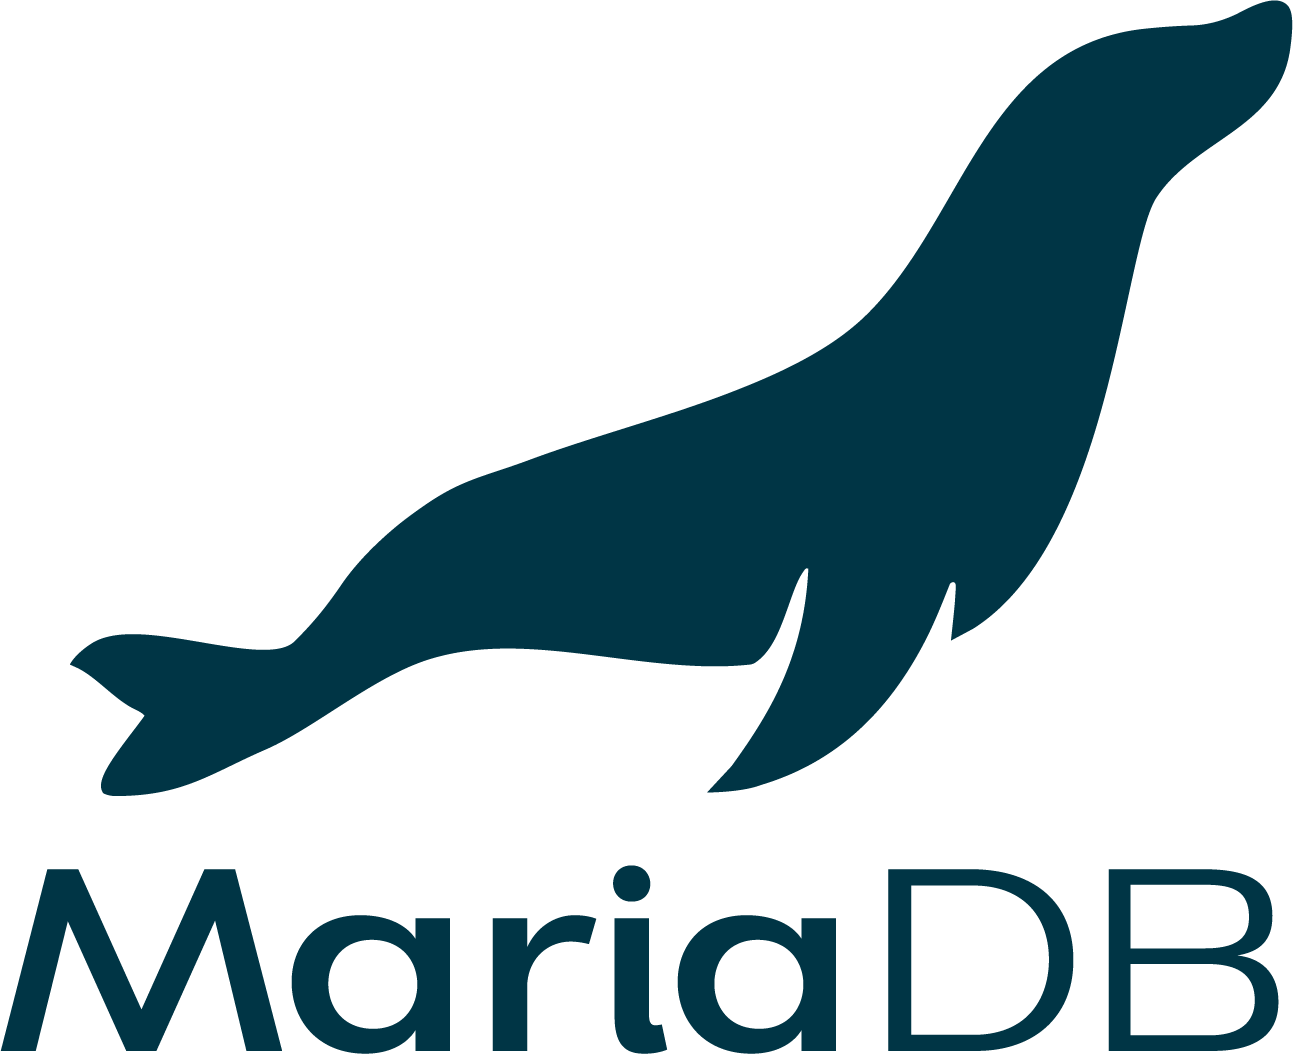 MariaDB_logo